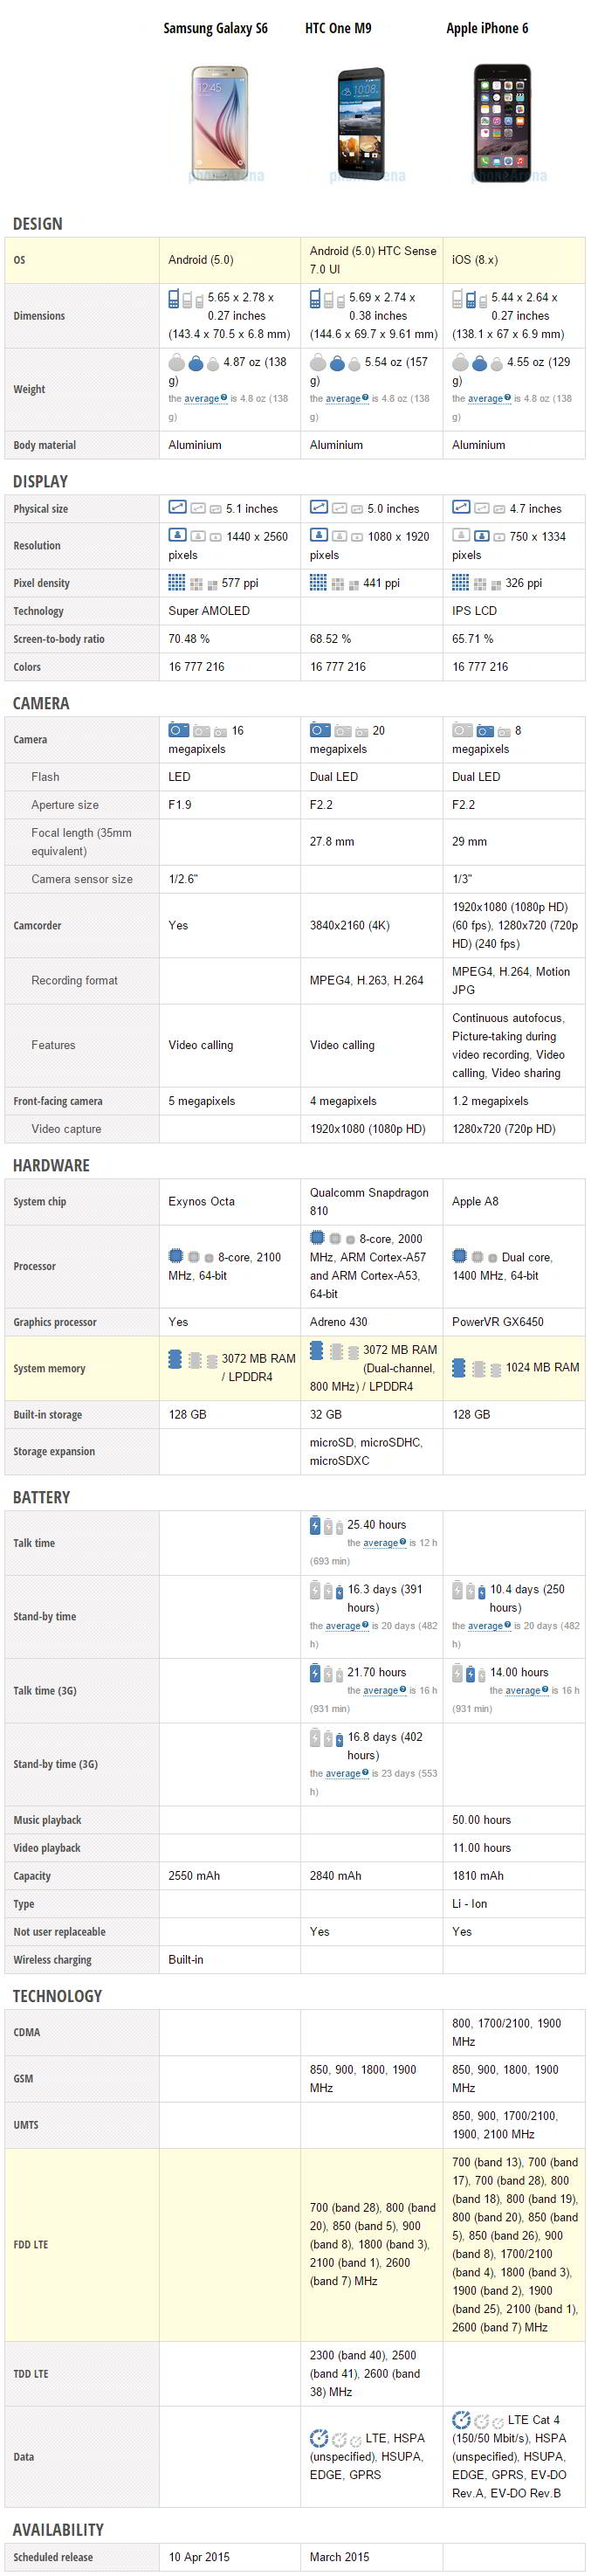 Comparaison des spécifications entre Samsung Galaxy S6, HTC One M9 et Apple iPhone 6